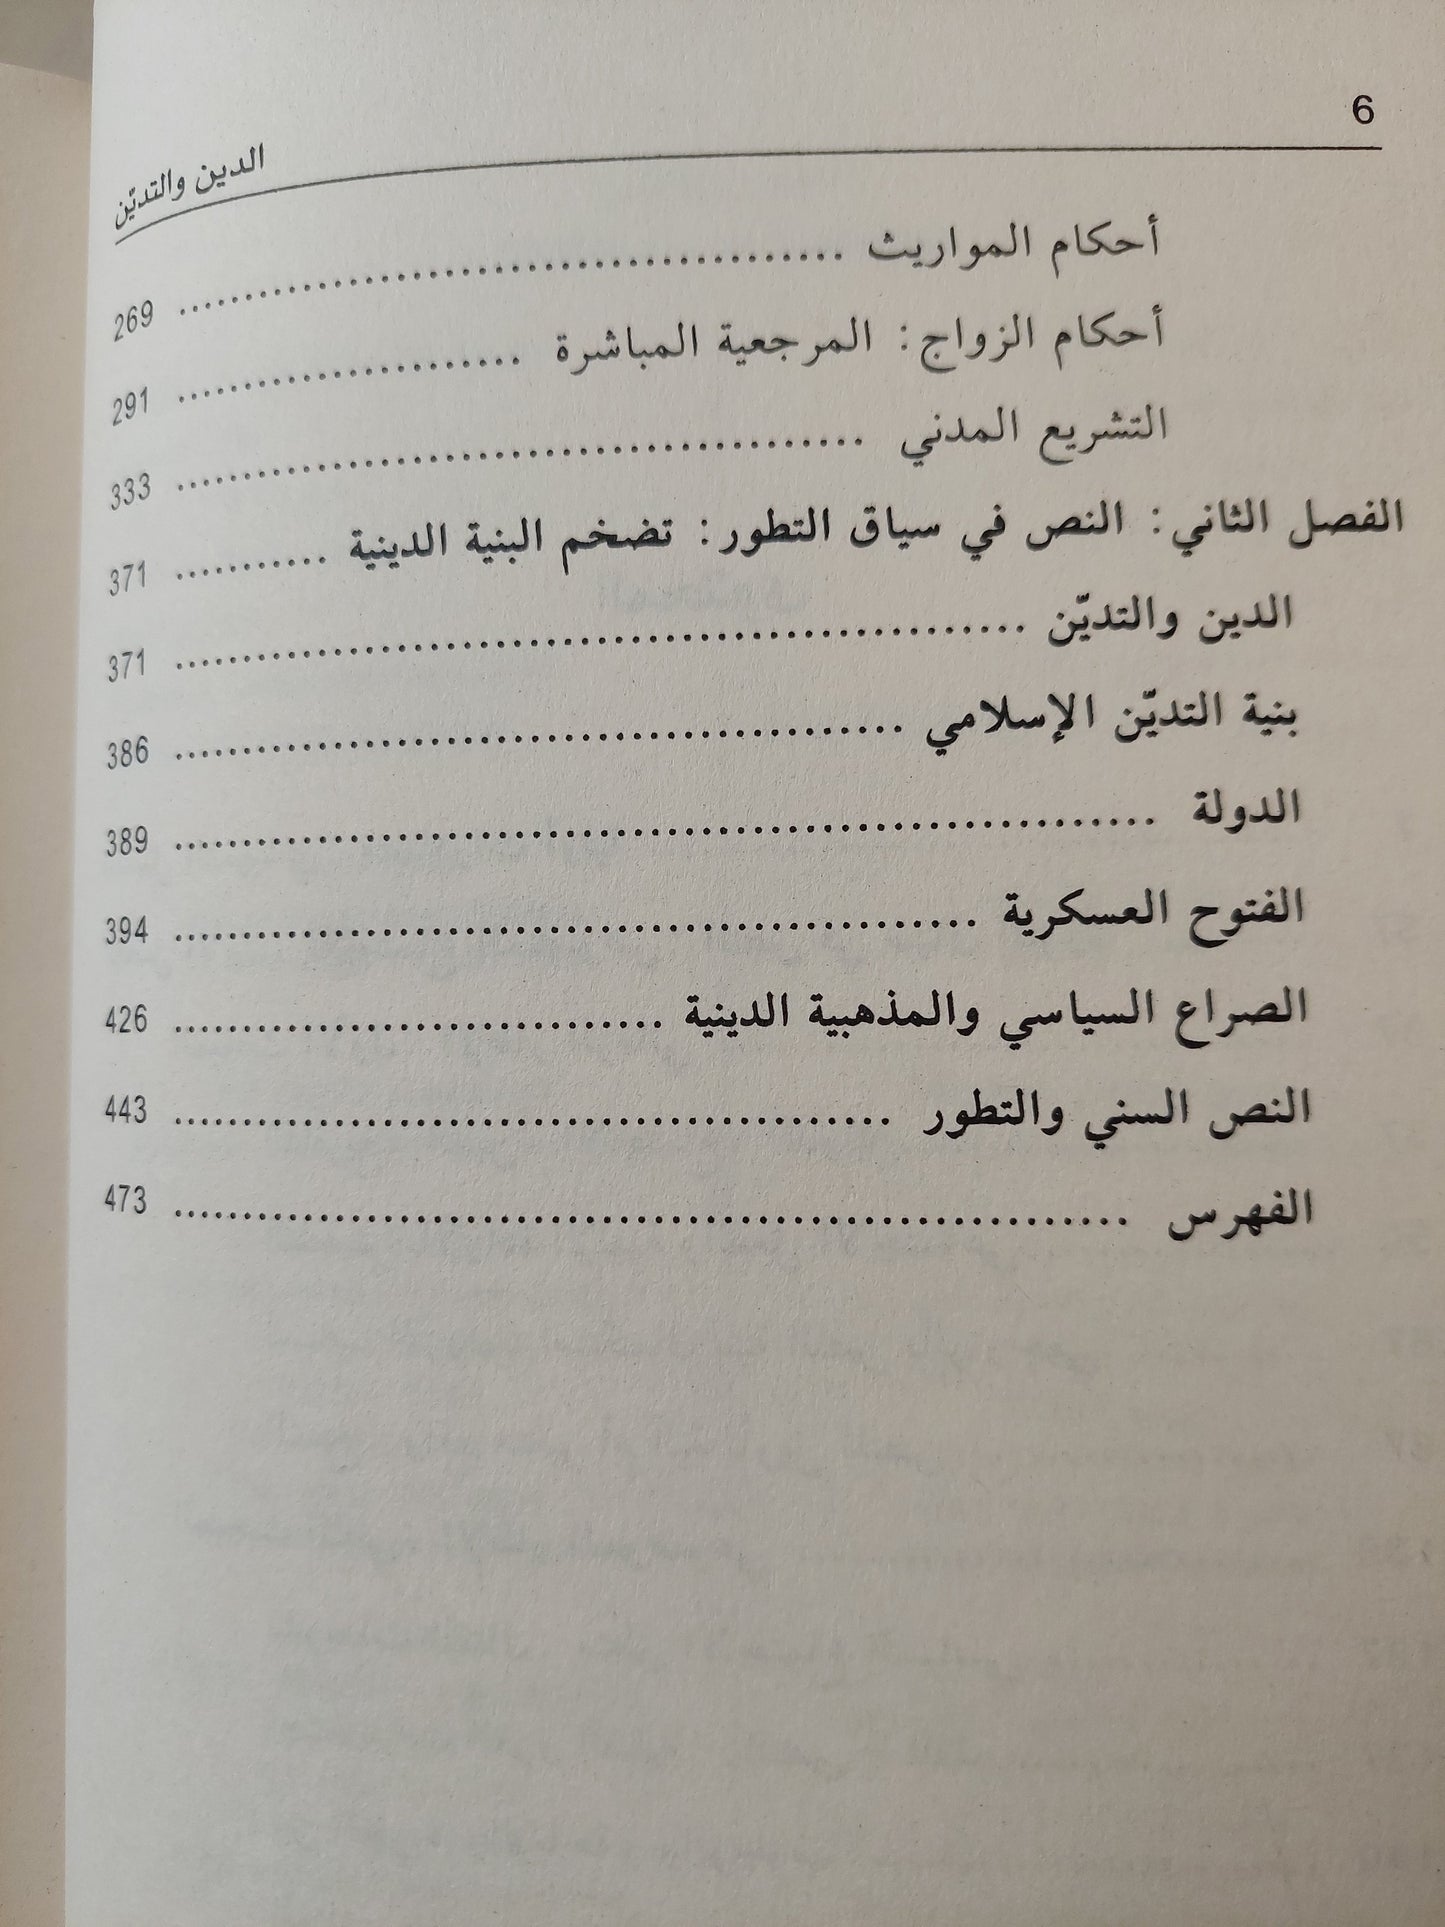 الدين والتدين ؛ التشريع والنص والاجتماع - عبد الجواد ياسين